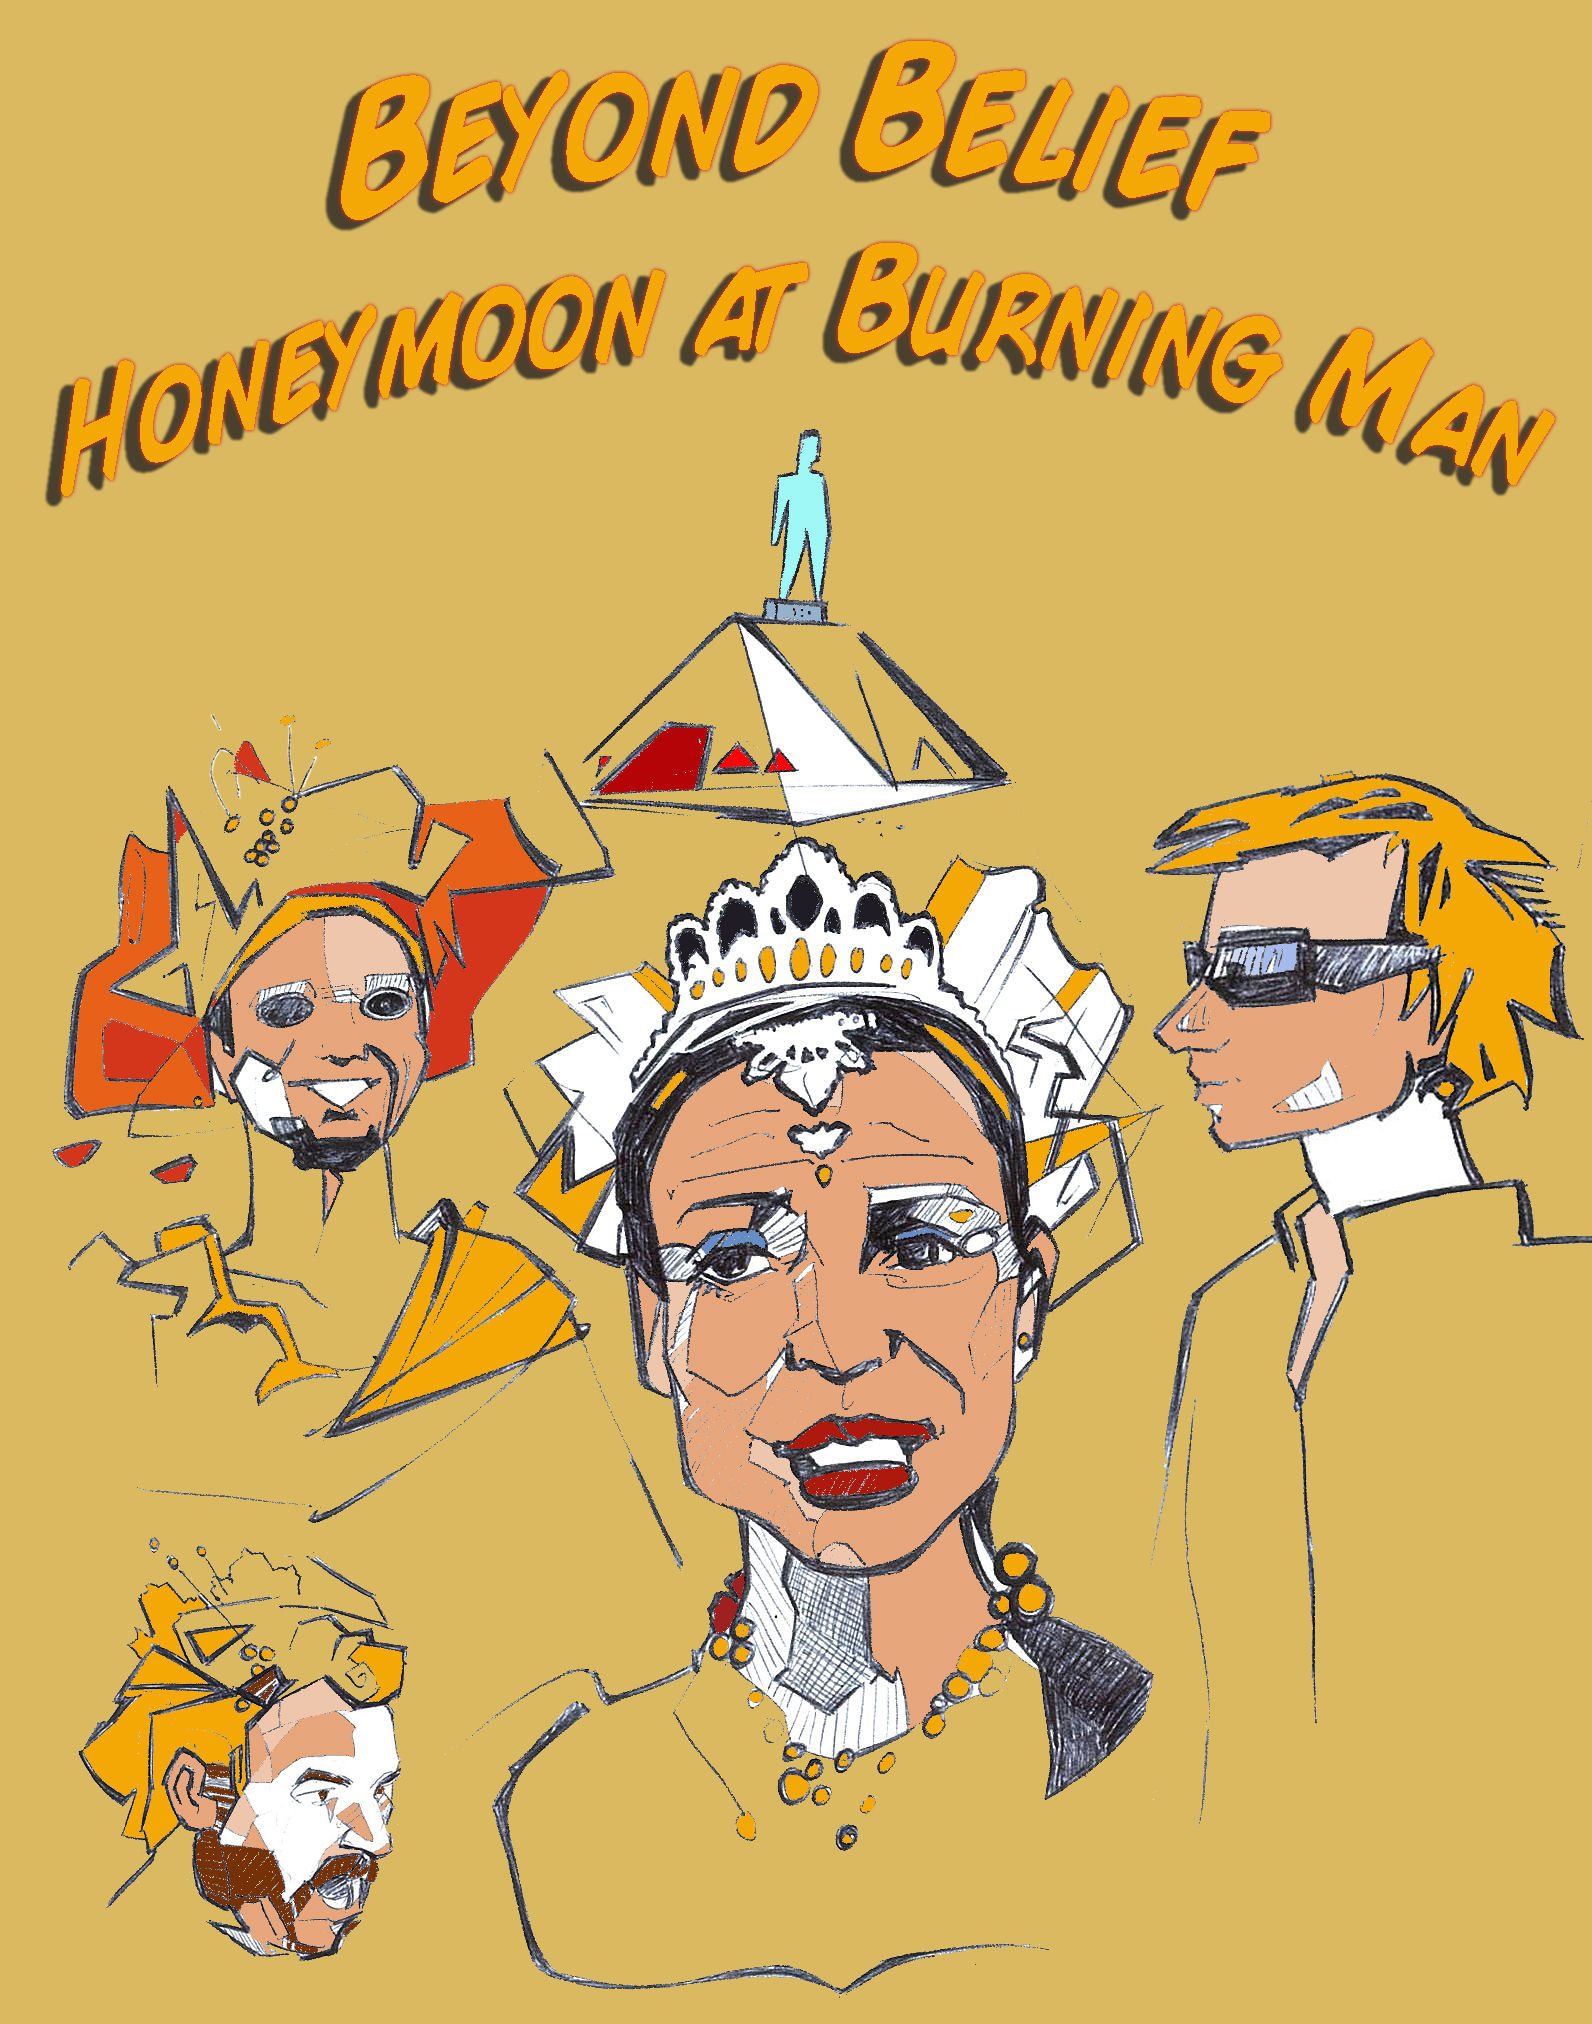 Beyond Belief: Honeymoon at Burning Man